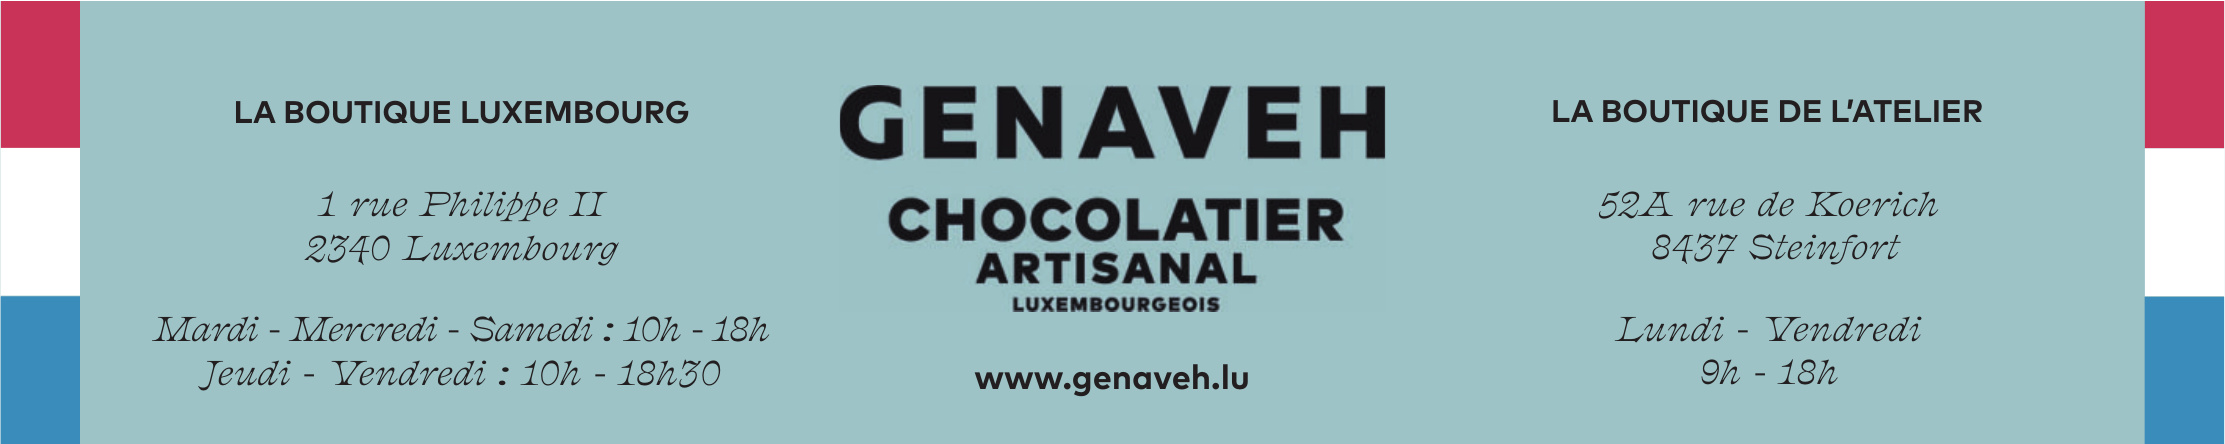 Genaveh Chocolatier Artisanal